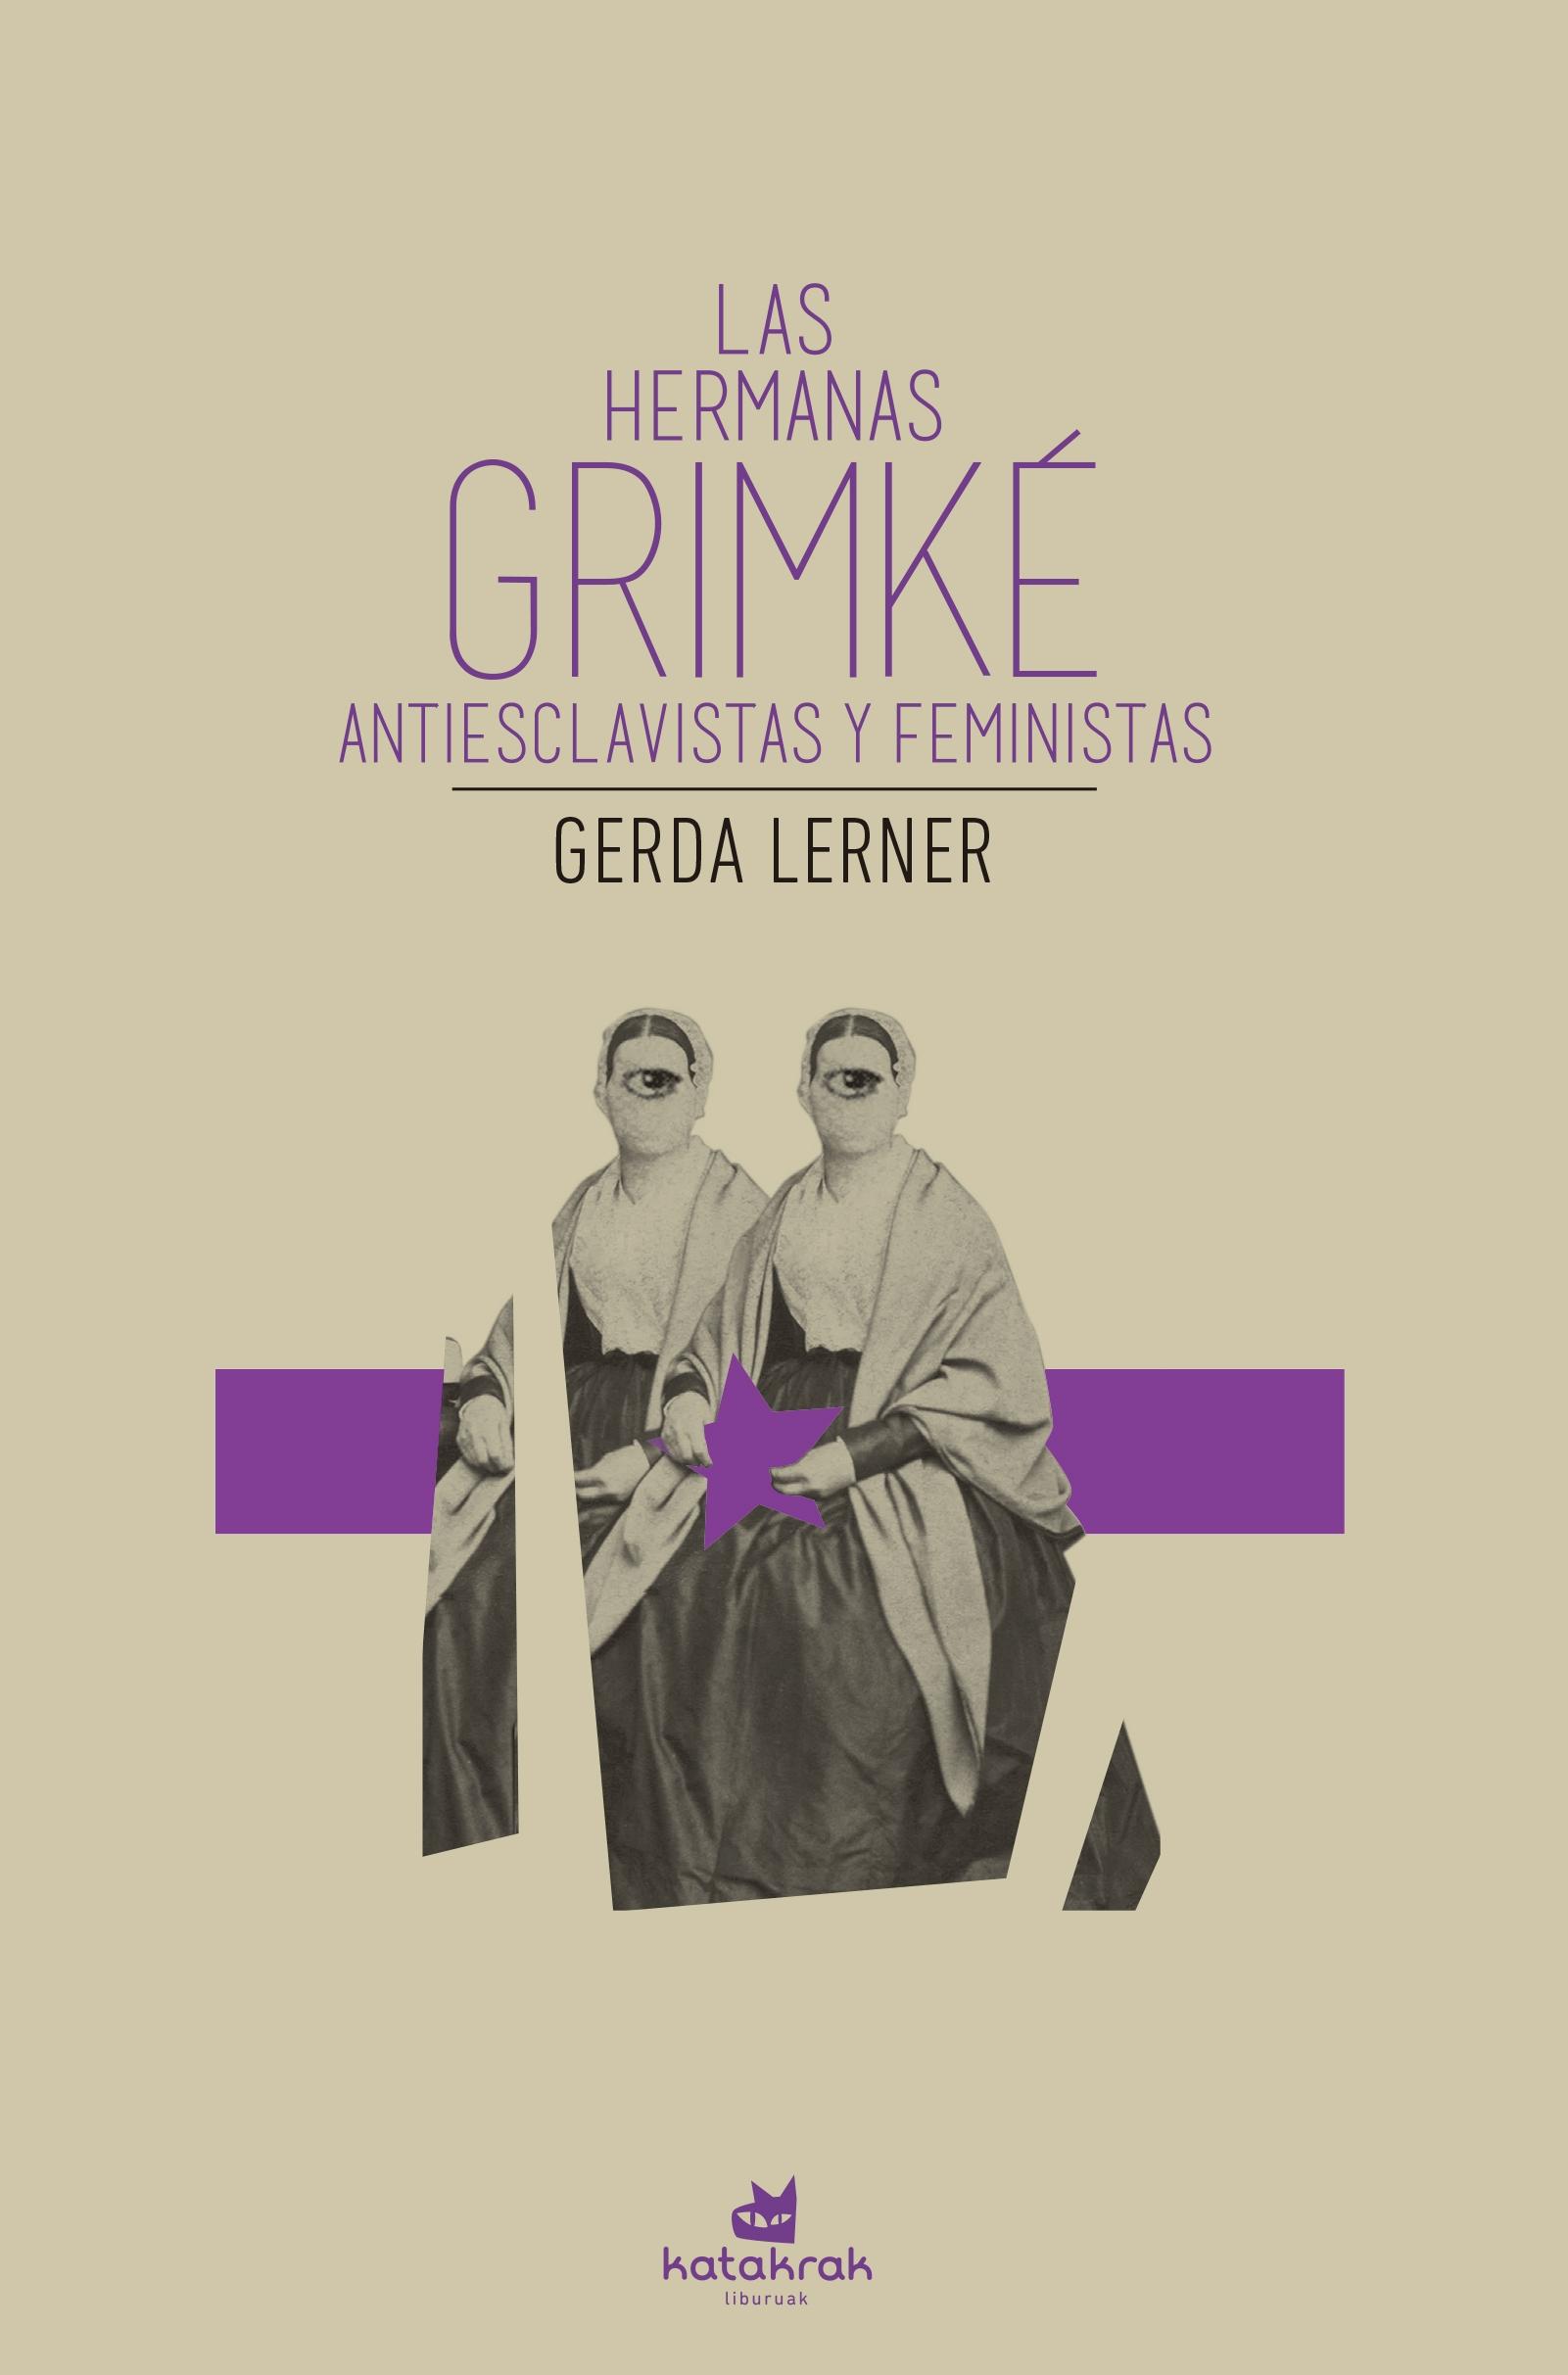 Las Hermanas Grimké "Antiesclavistas y Feministas"